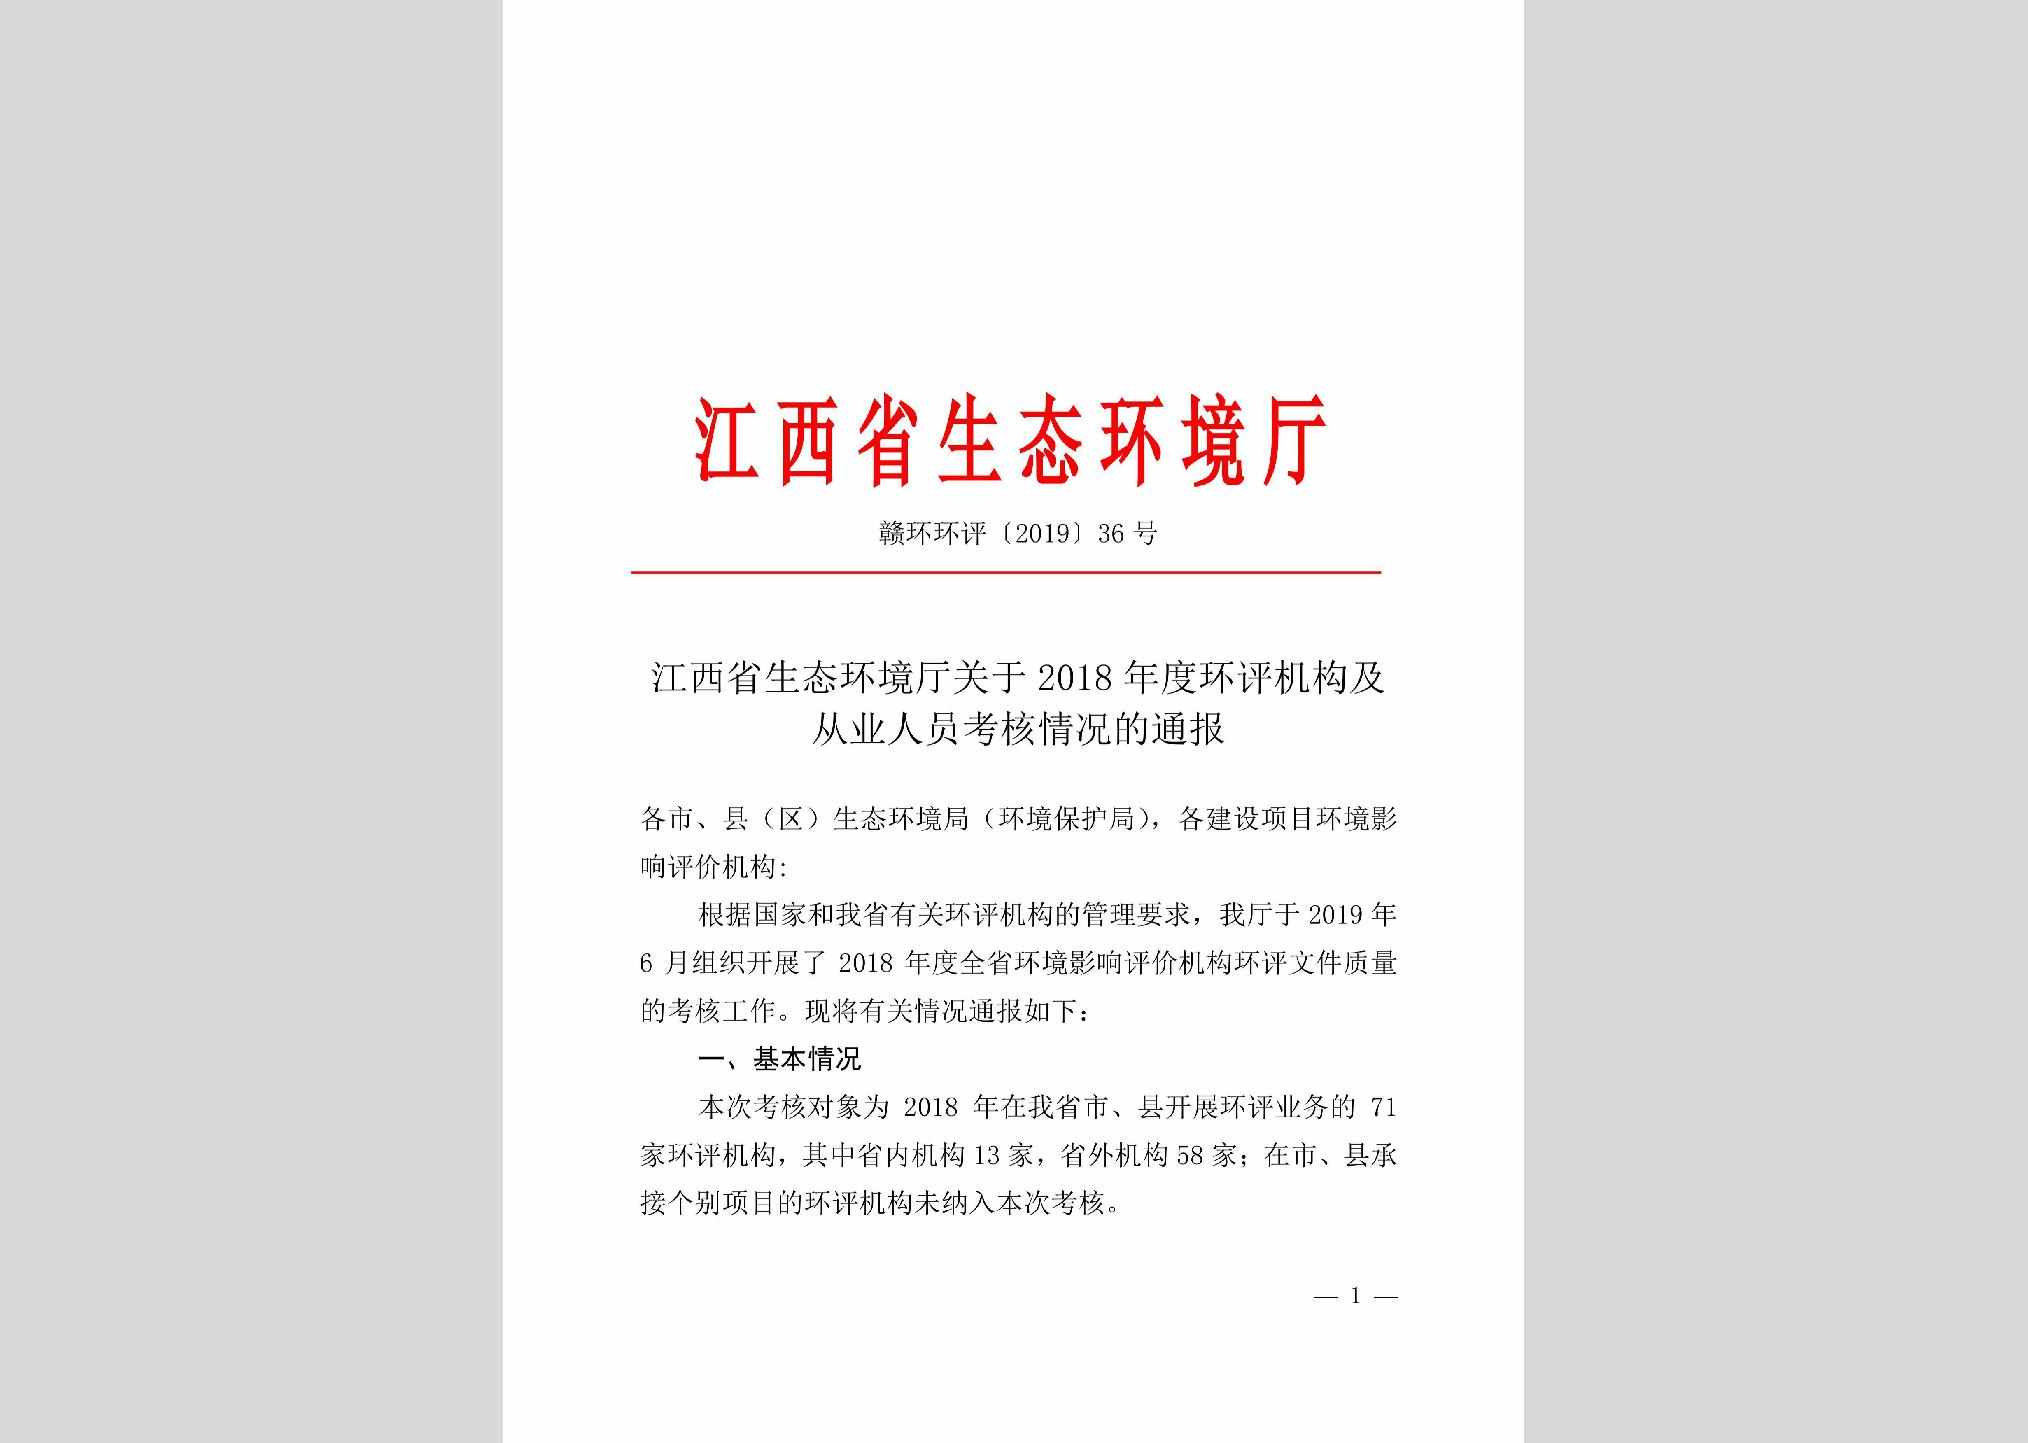 赣环环评[2019]36号：江西省生态环境厅关于2018年度环评机构及从业人员考核情况的通报